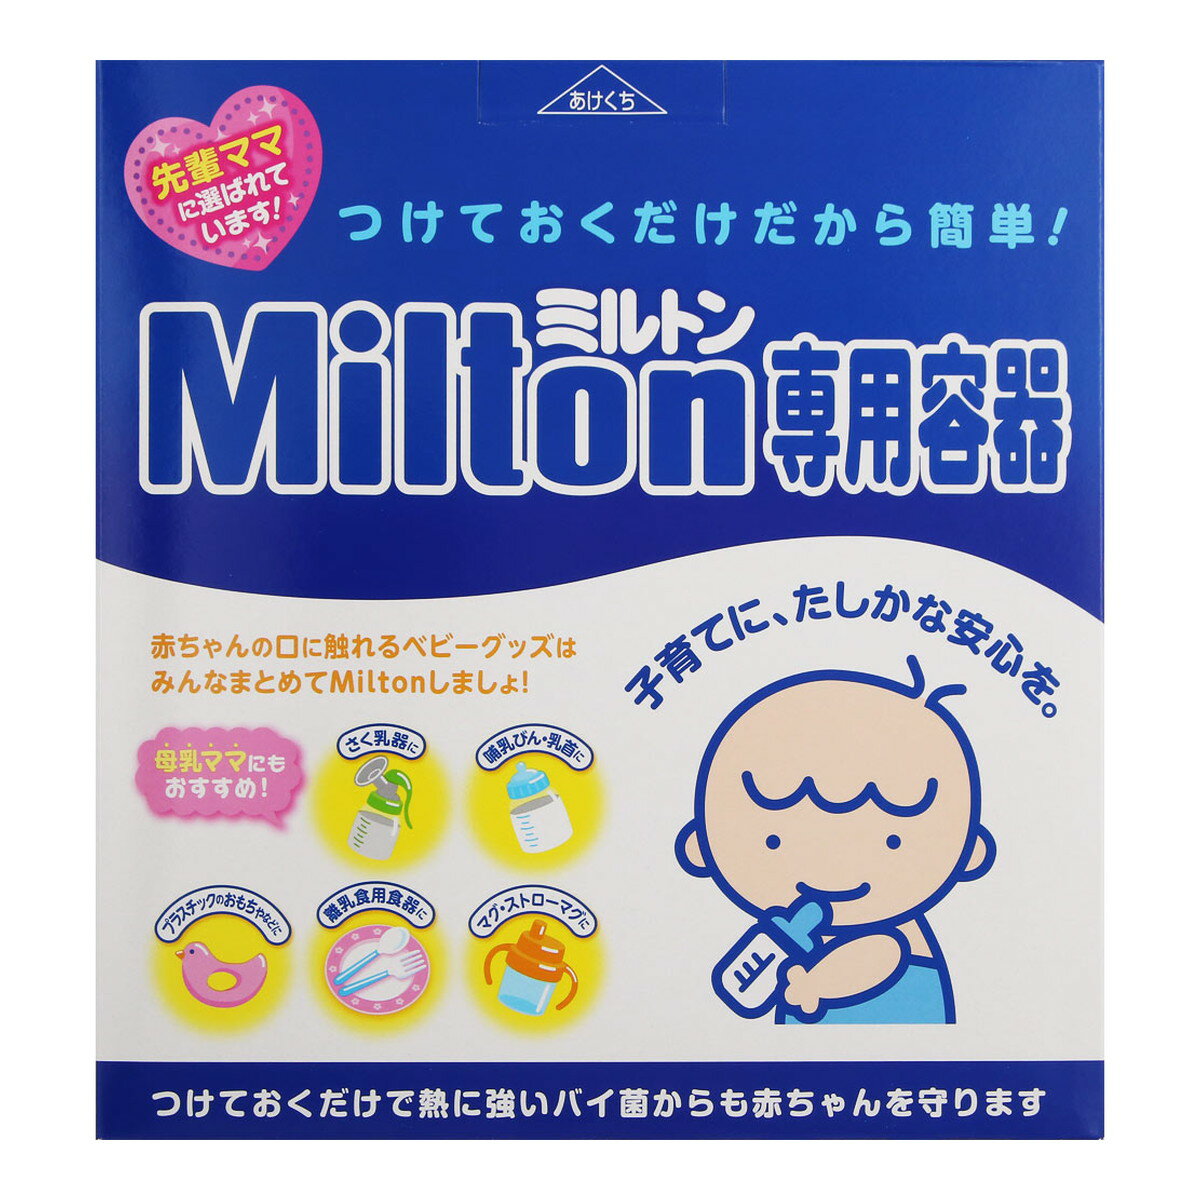 【サマーセール】杏林製薬 ミルトン 専用容器 P型 4L